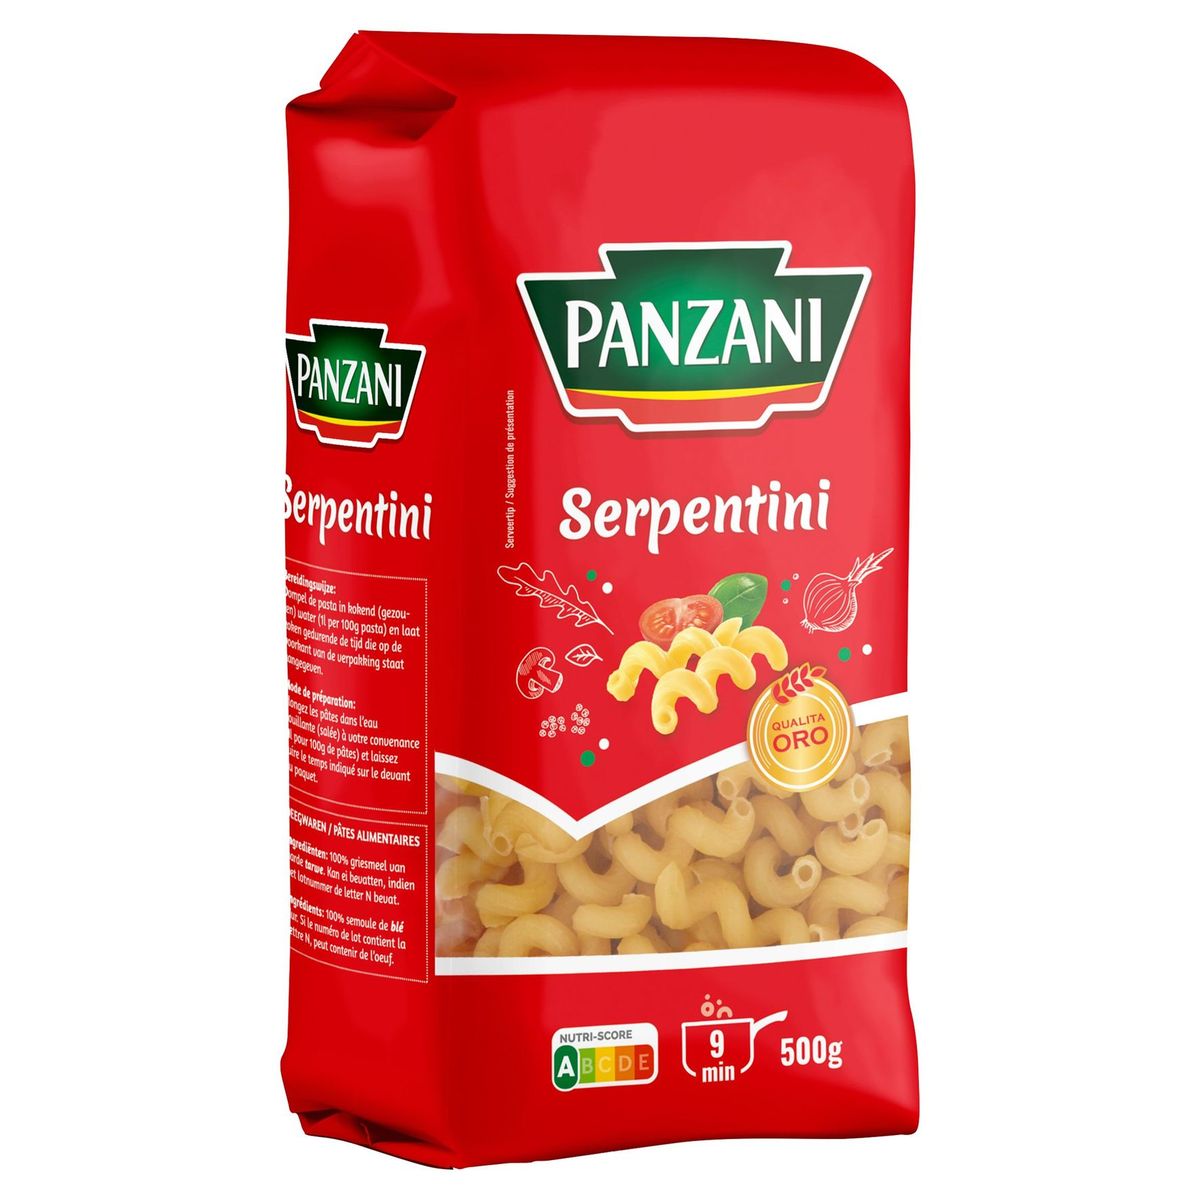 Panzani Serpentini 500 g